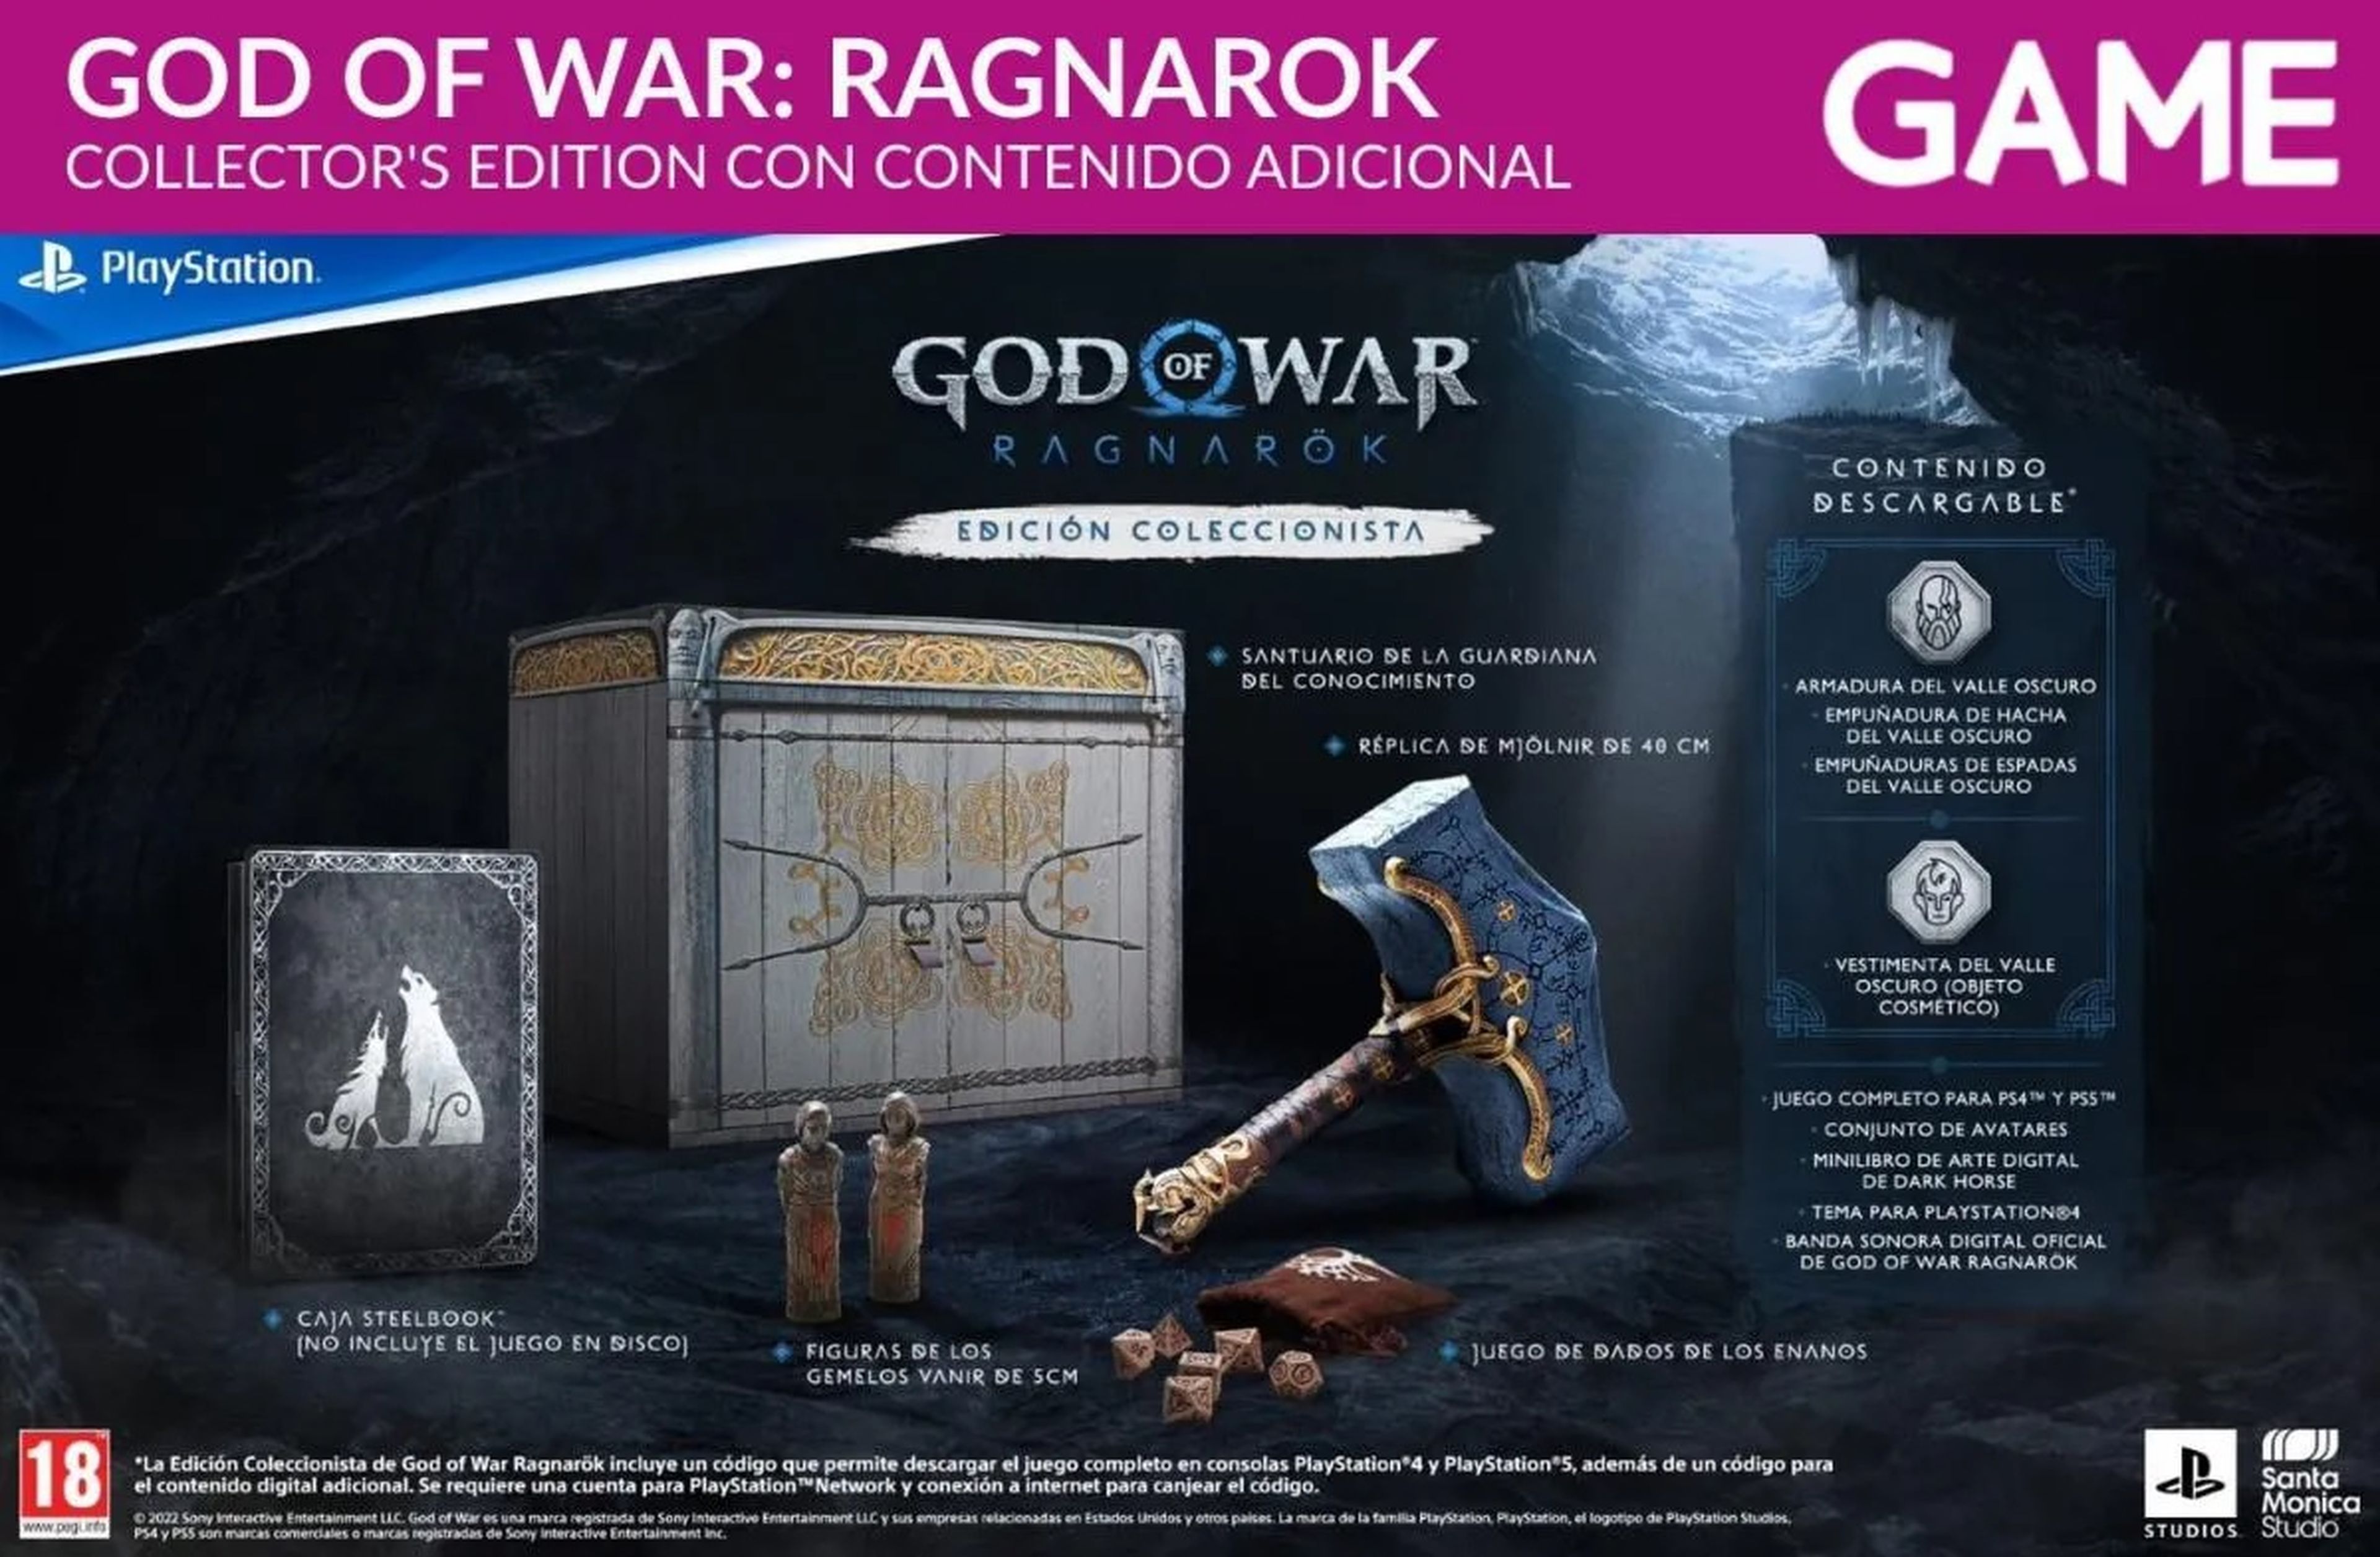 God of War Ragnarök: Una oda a la mitología nórdica digna de los dioses de Asgard